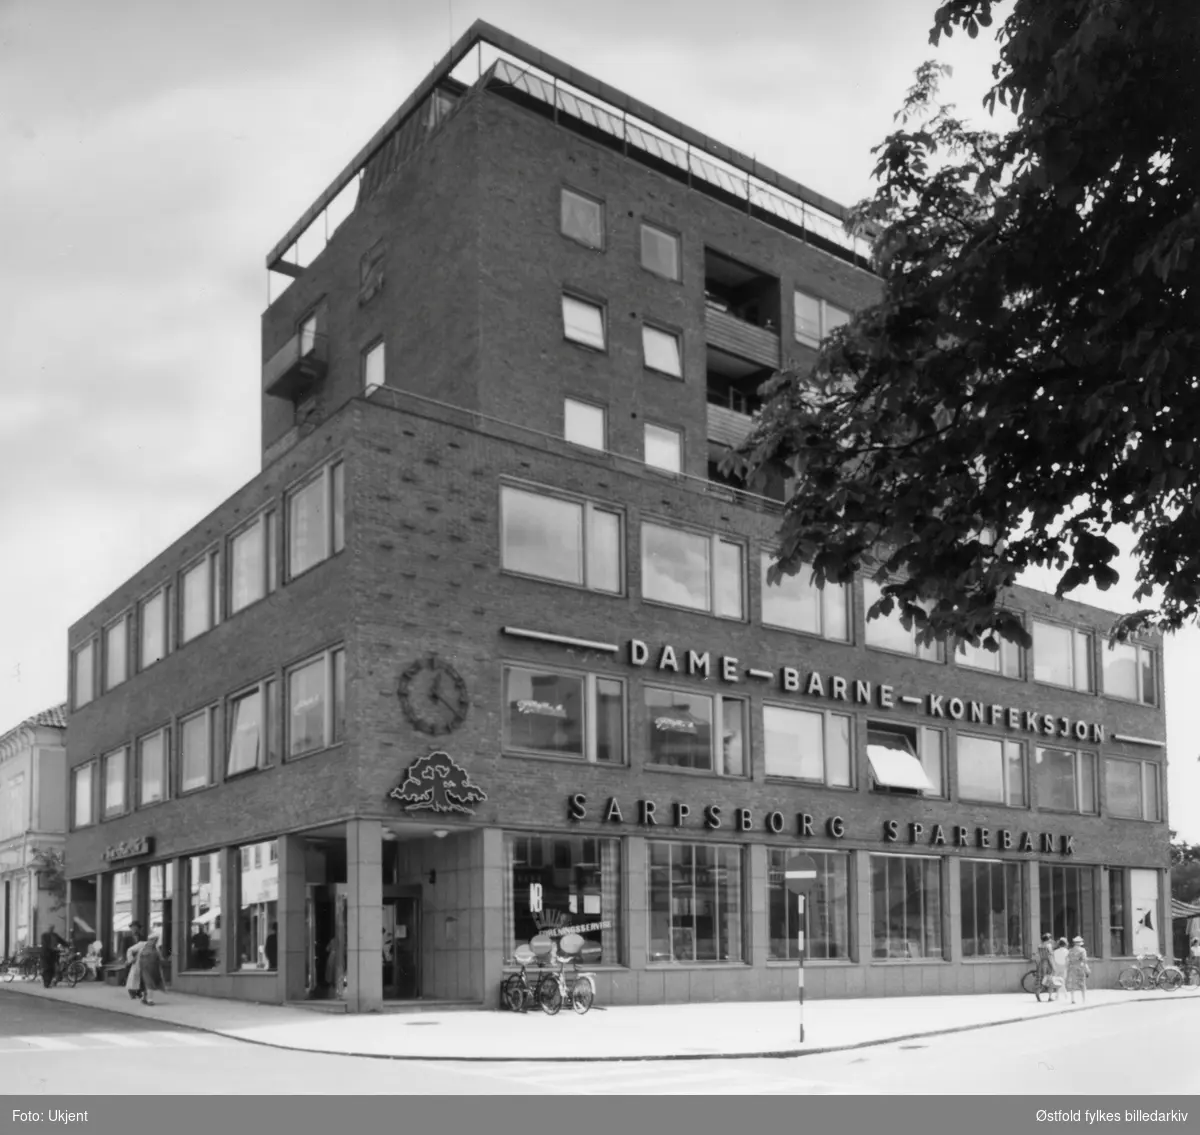 Sarpsborg Sparebank sitt nybygg i Torggata 6. I 1958 ble det bygd et banklokale for Sarpsborg Sparebank på tomta til Torggata 6, arkitekt var Arne Bjønnes.
Dame- barne- konfeksjons forretning.